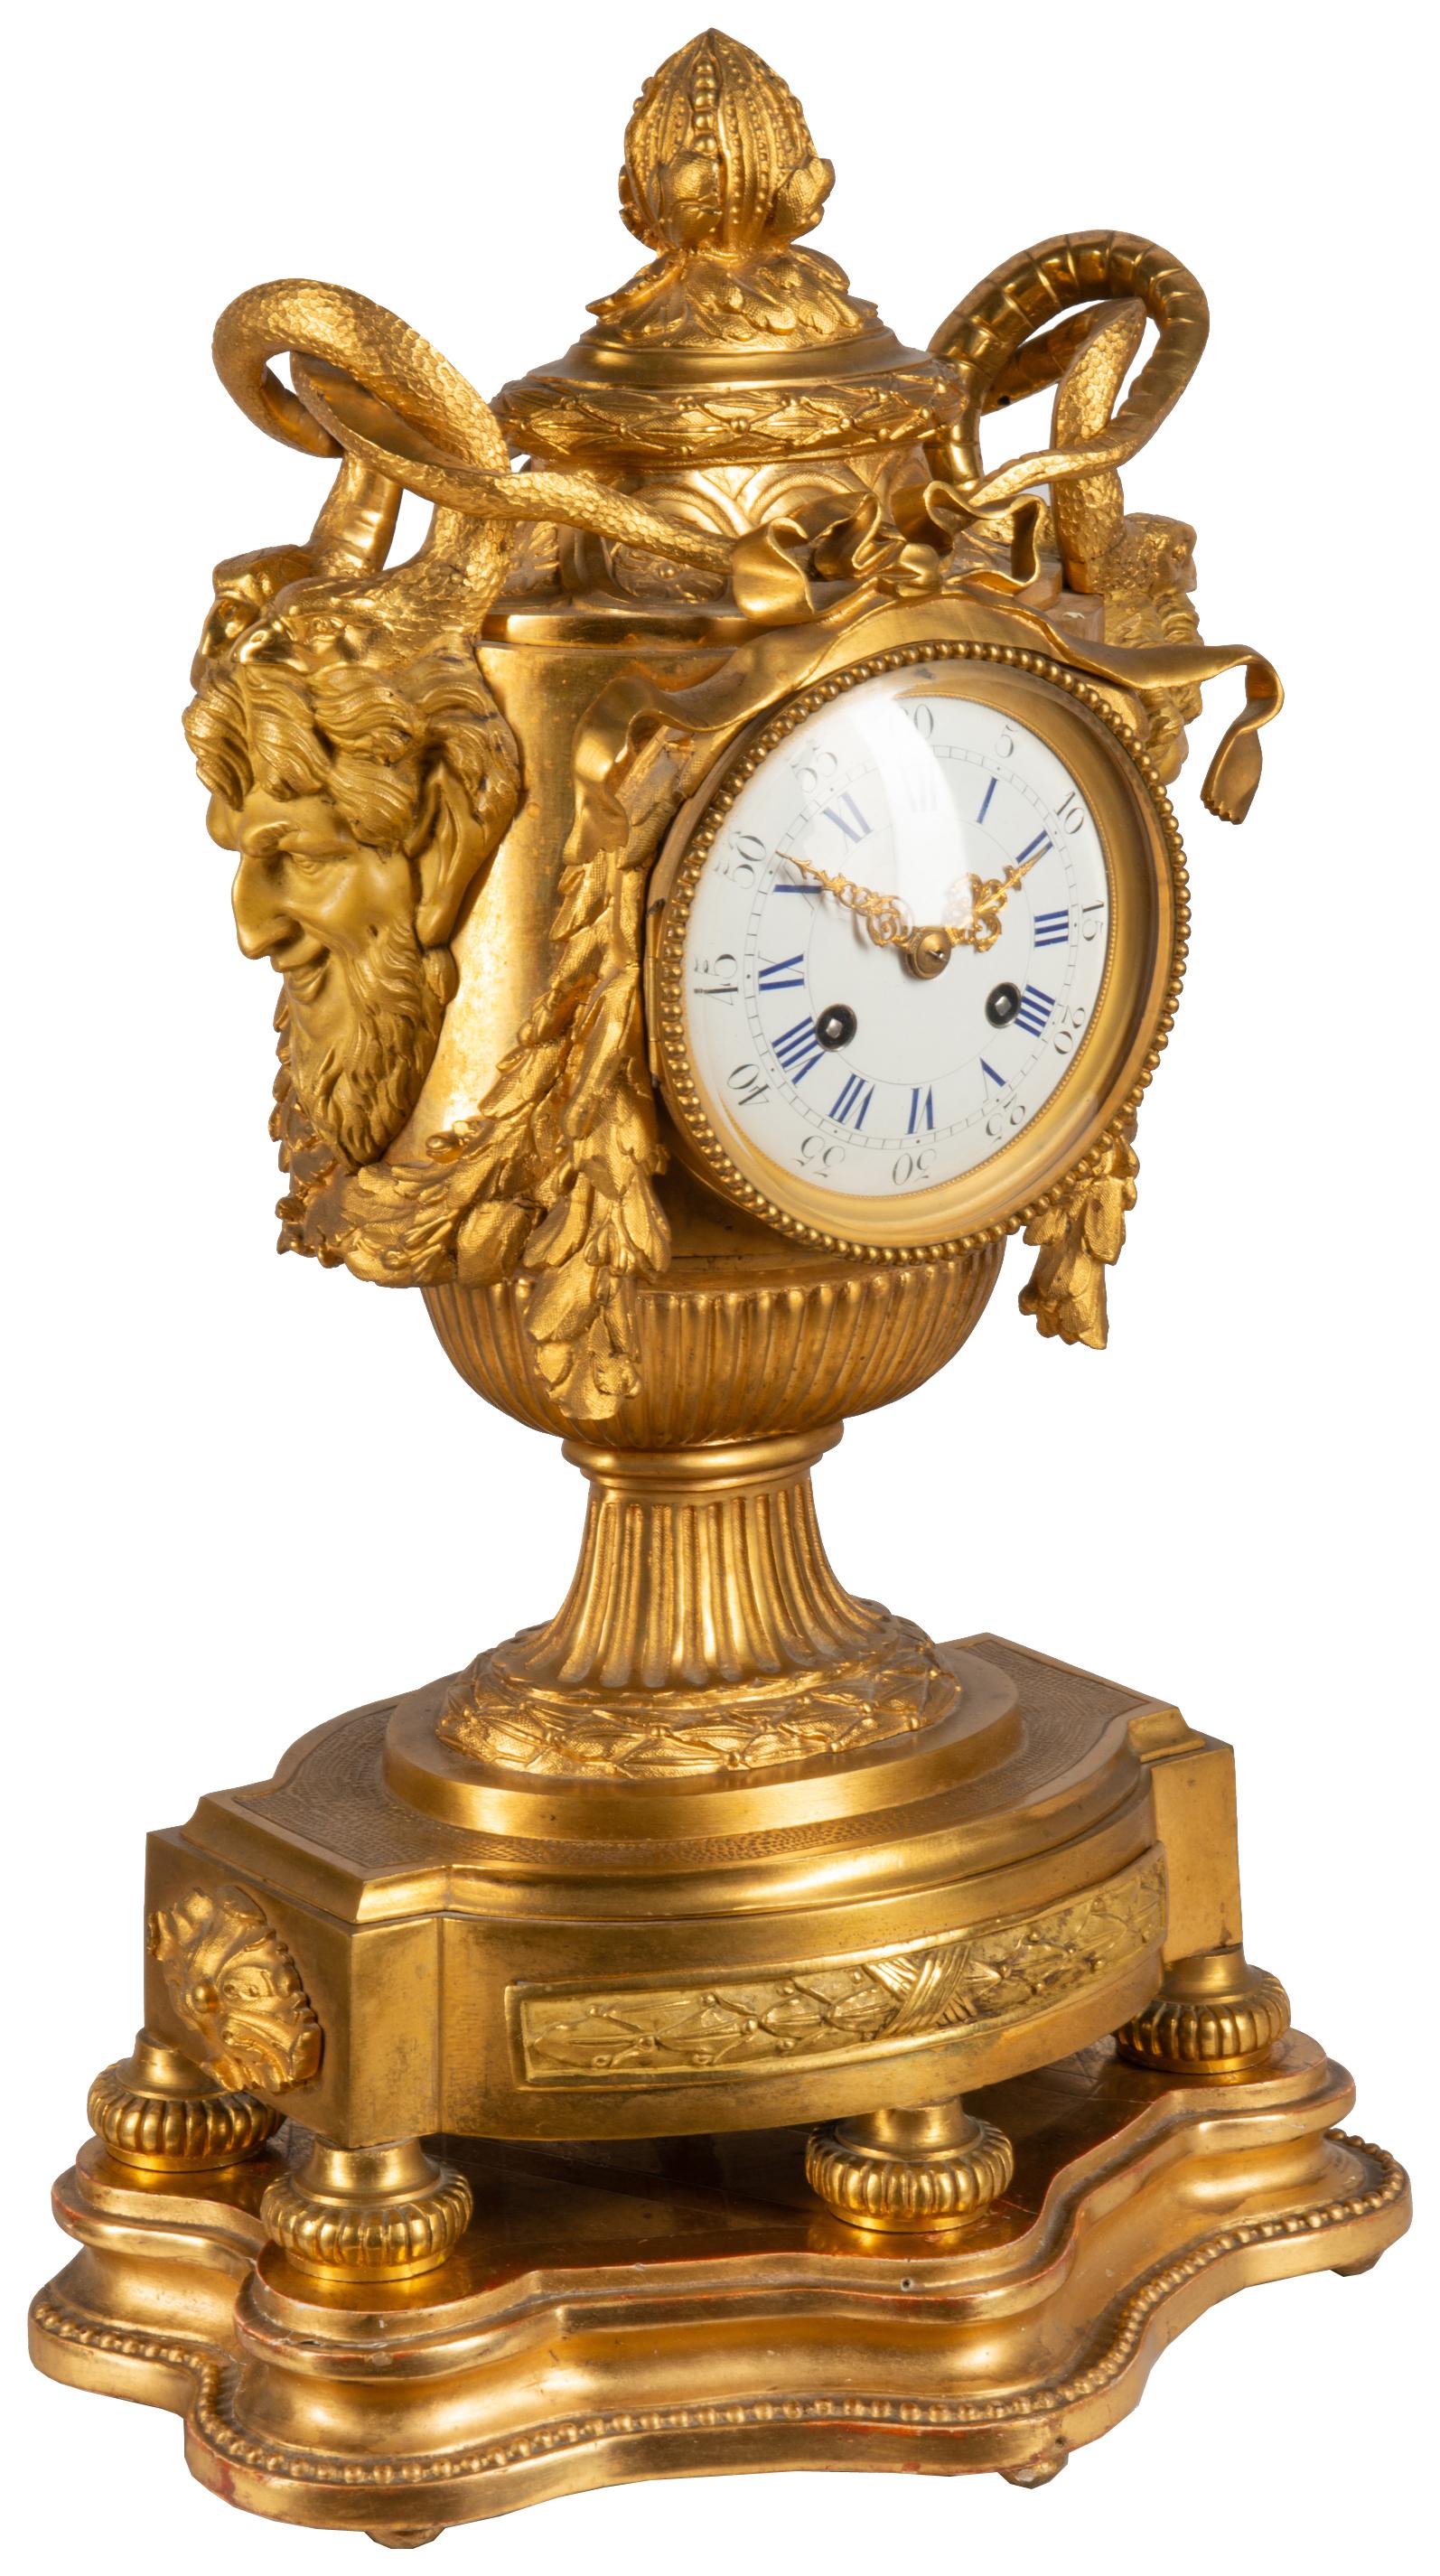 Une très impressionnante pendule de cheminée française du 19ème siècle, en bronze doré, influencée par la Méduse. Le cadran de l'horloge en émail blanc est orné de masques barbus de chaque côté, avec des serpents au-dessus de guirlandes feuillues.